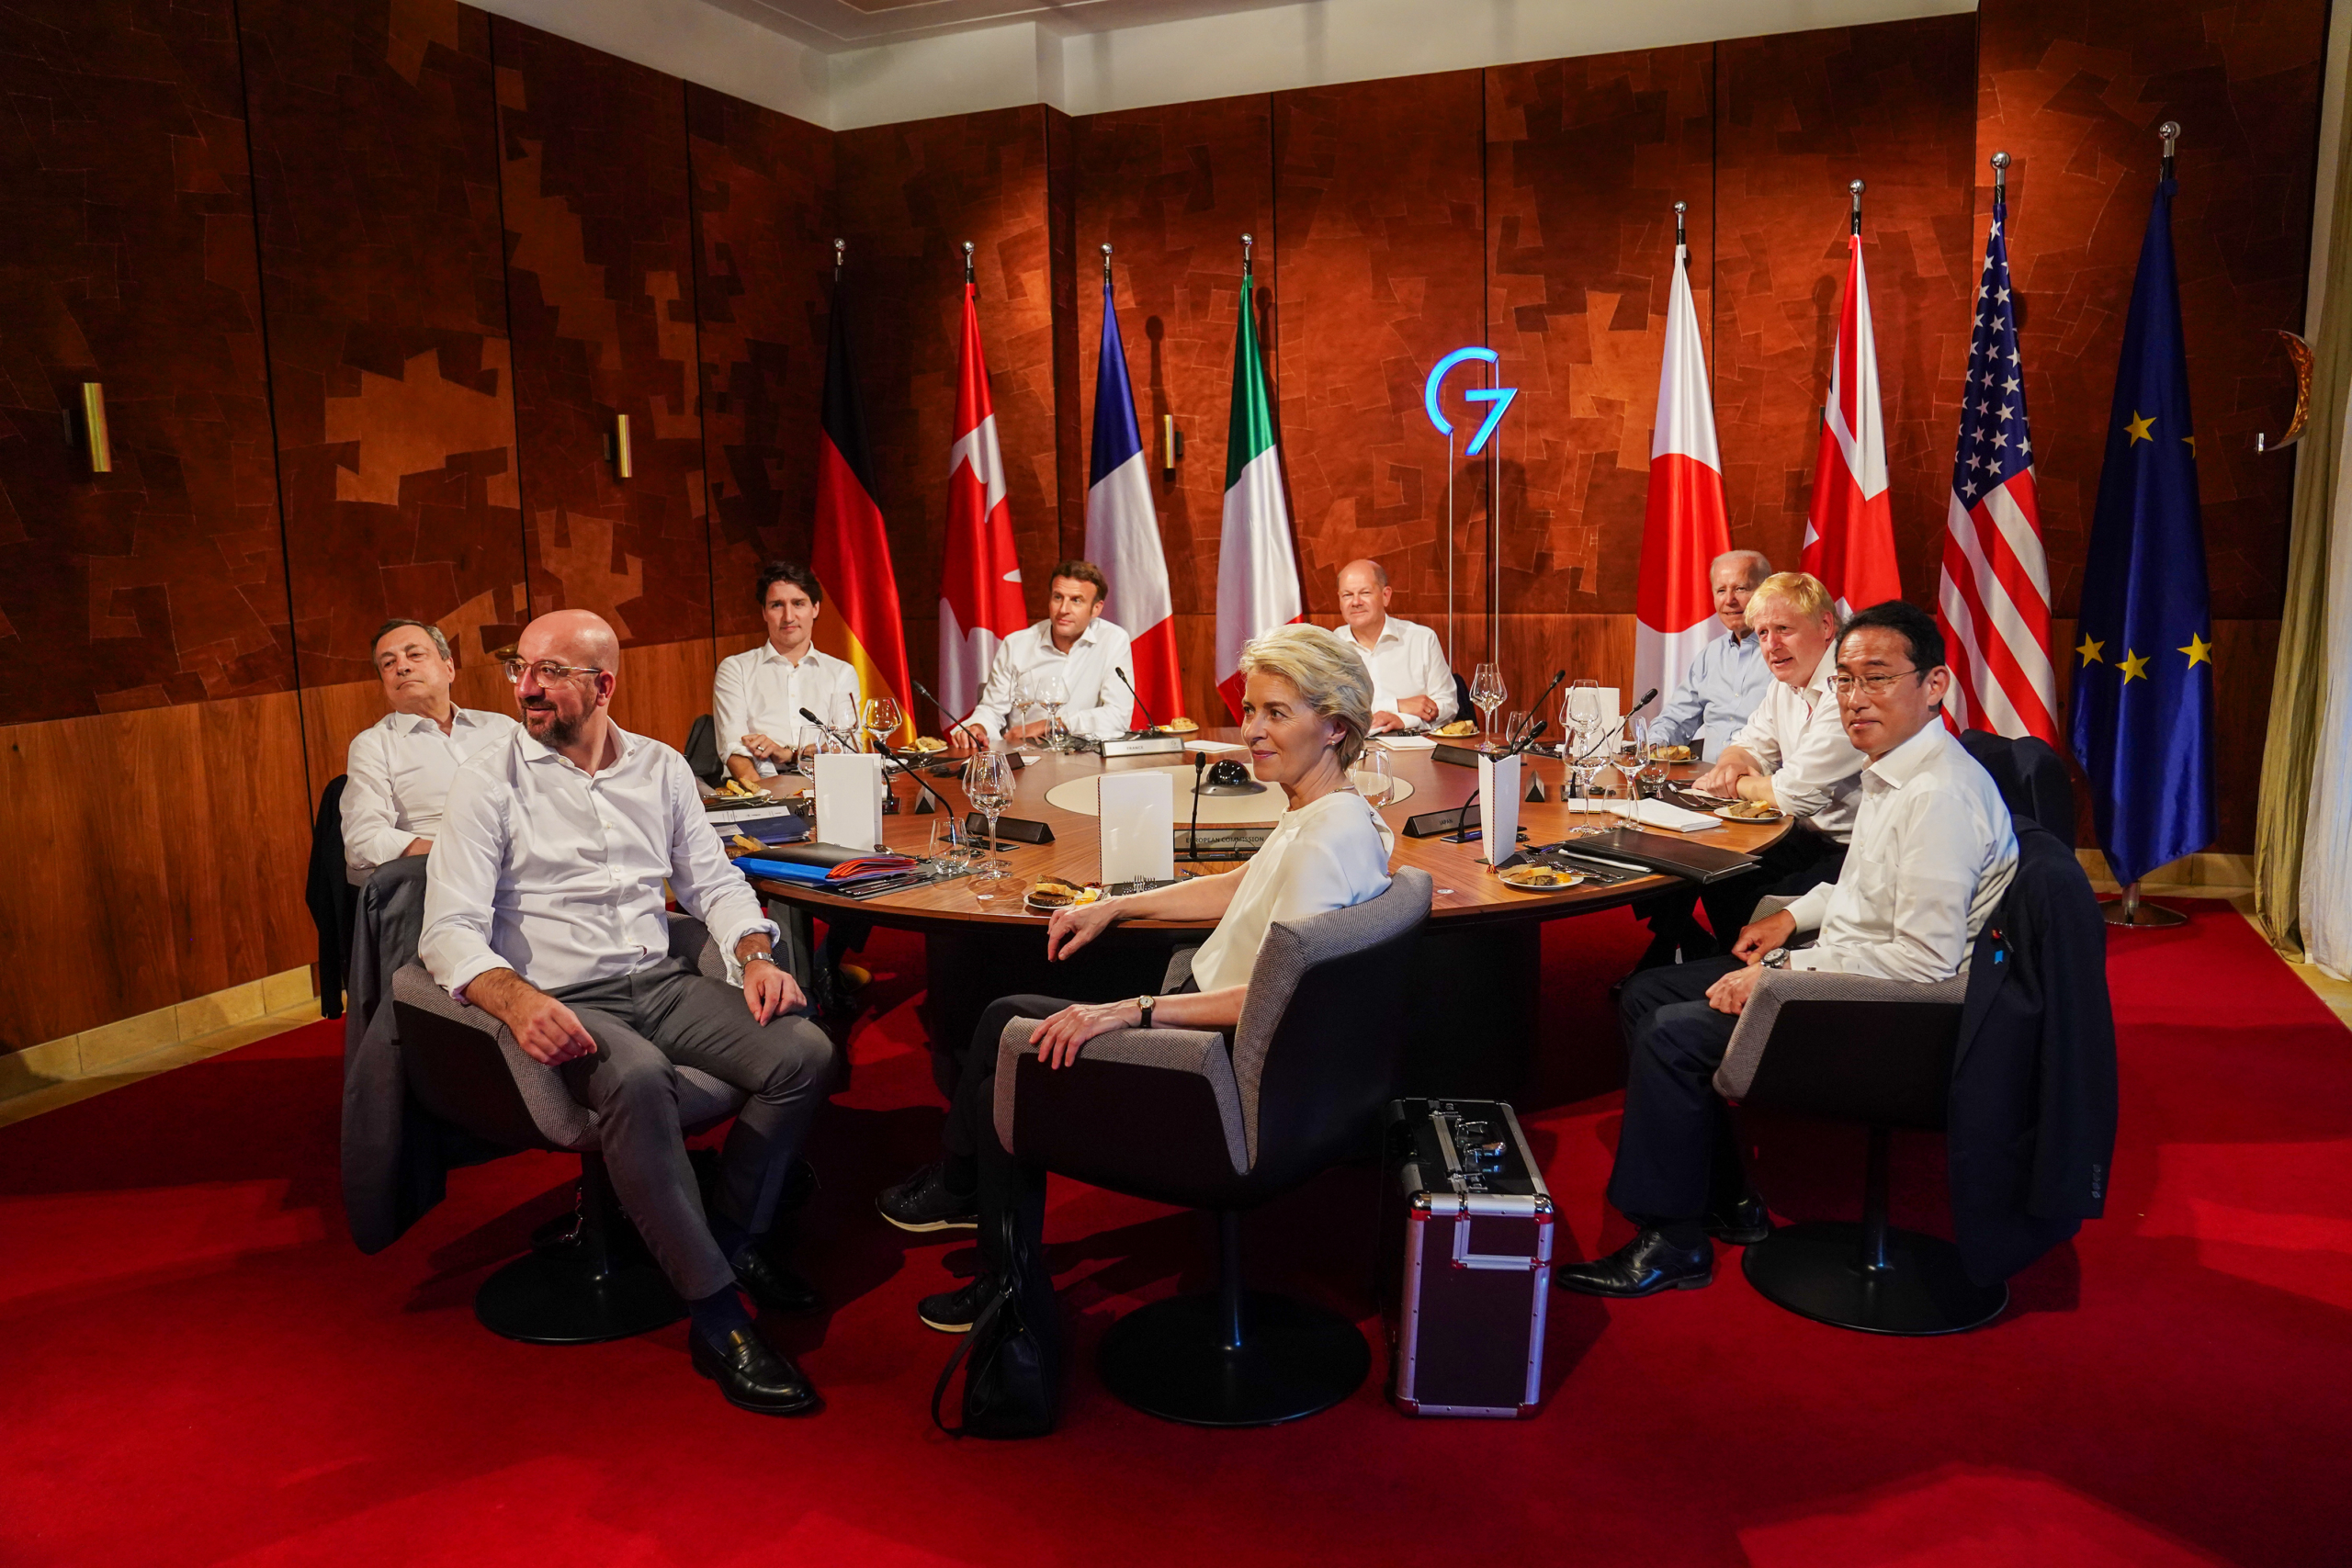 Các nhà lãnh đạo G7 từ châu Âu, Nhật Bản, Canada, và Hoa Kỳ tham dự bữa tối bàn công việc trong hội nghị thượng đỉnh G7 ở Schloss Elmau, Đức, vào ngày 26/06/2022. (Ảnh: Stefan Rousseau-Pool/Getty Images)